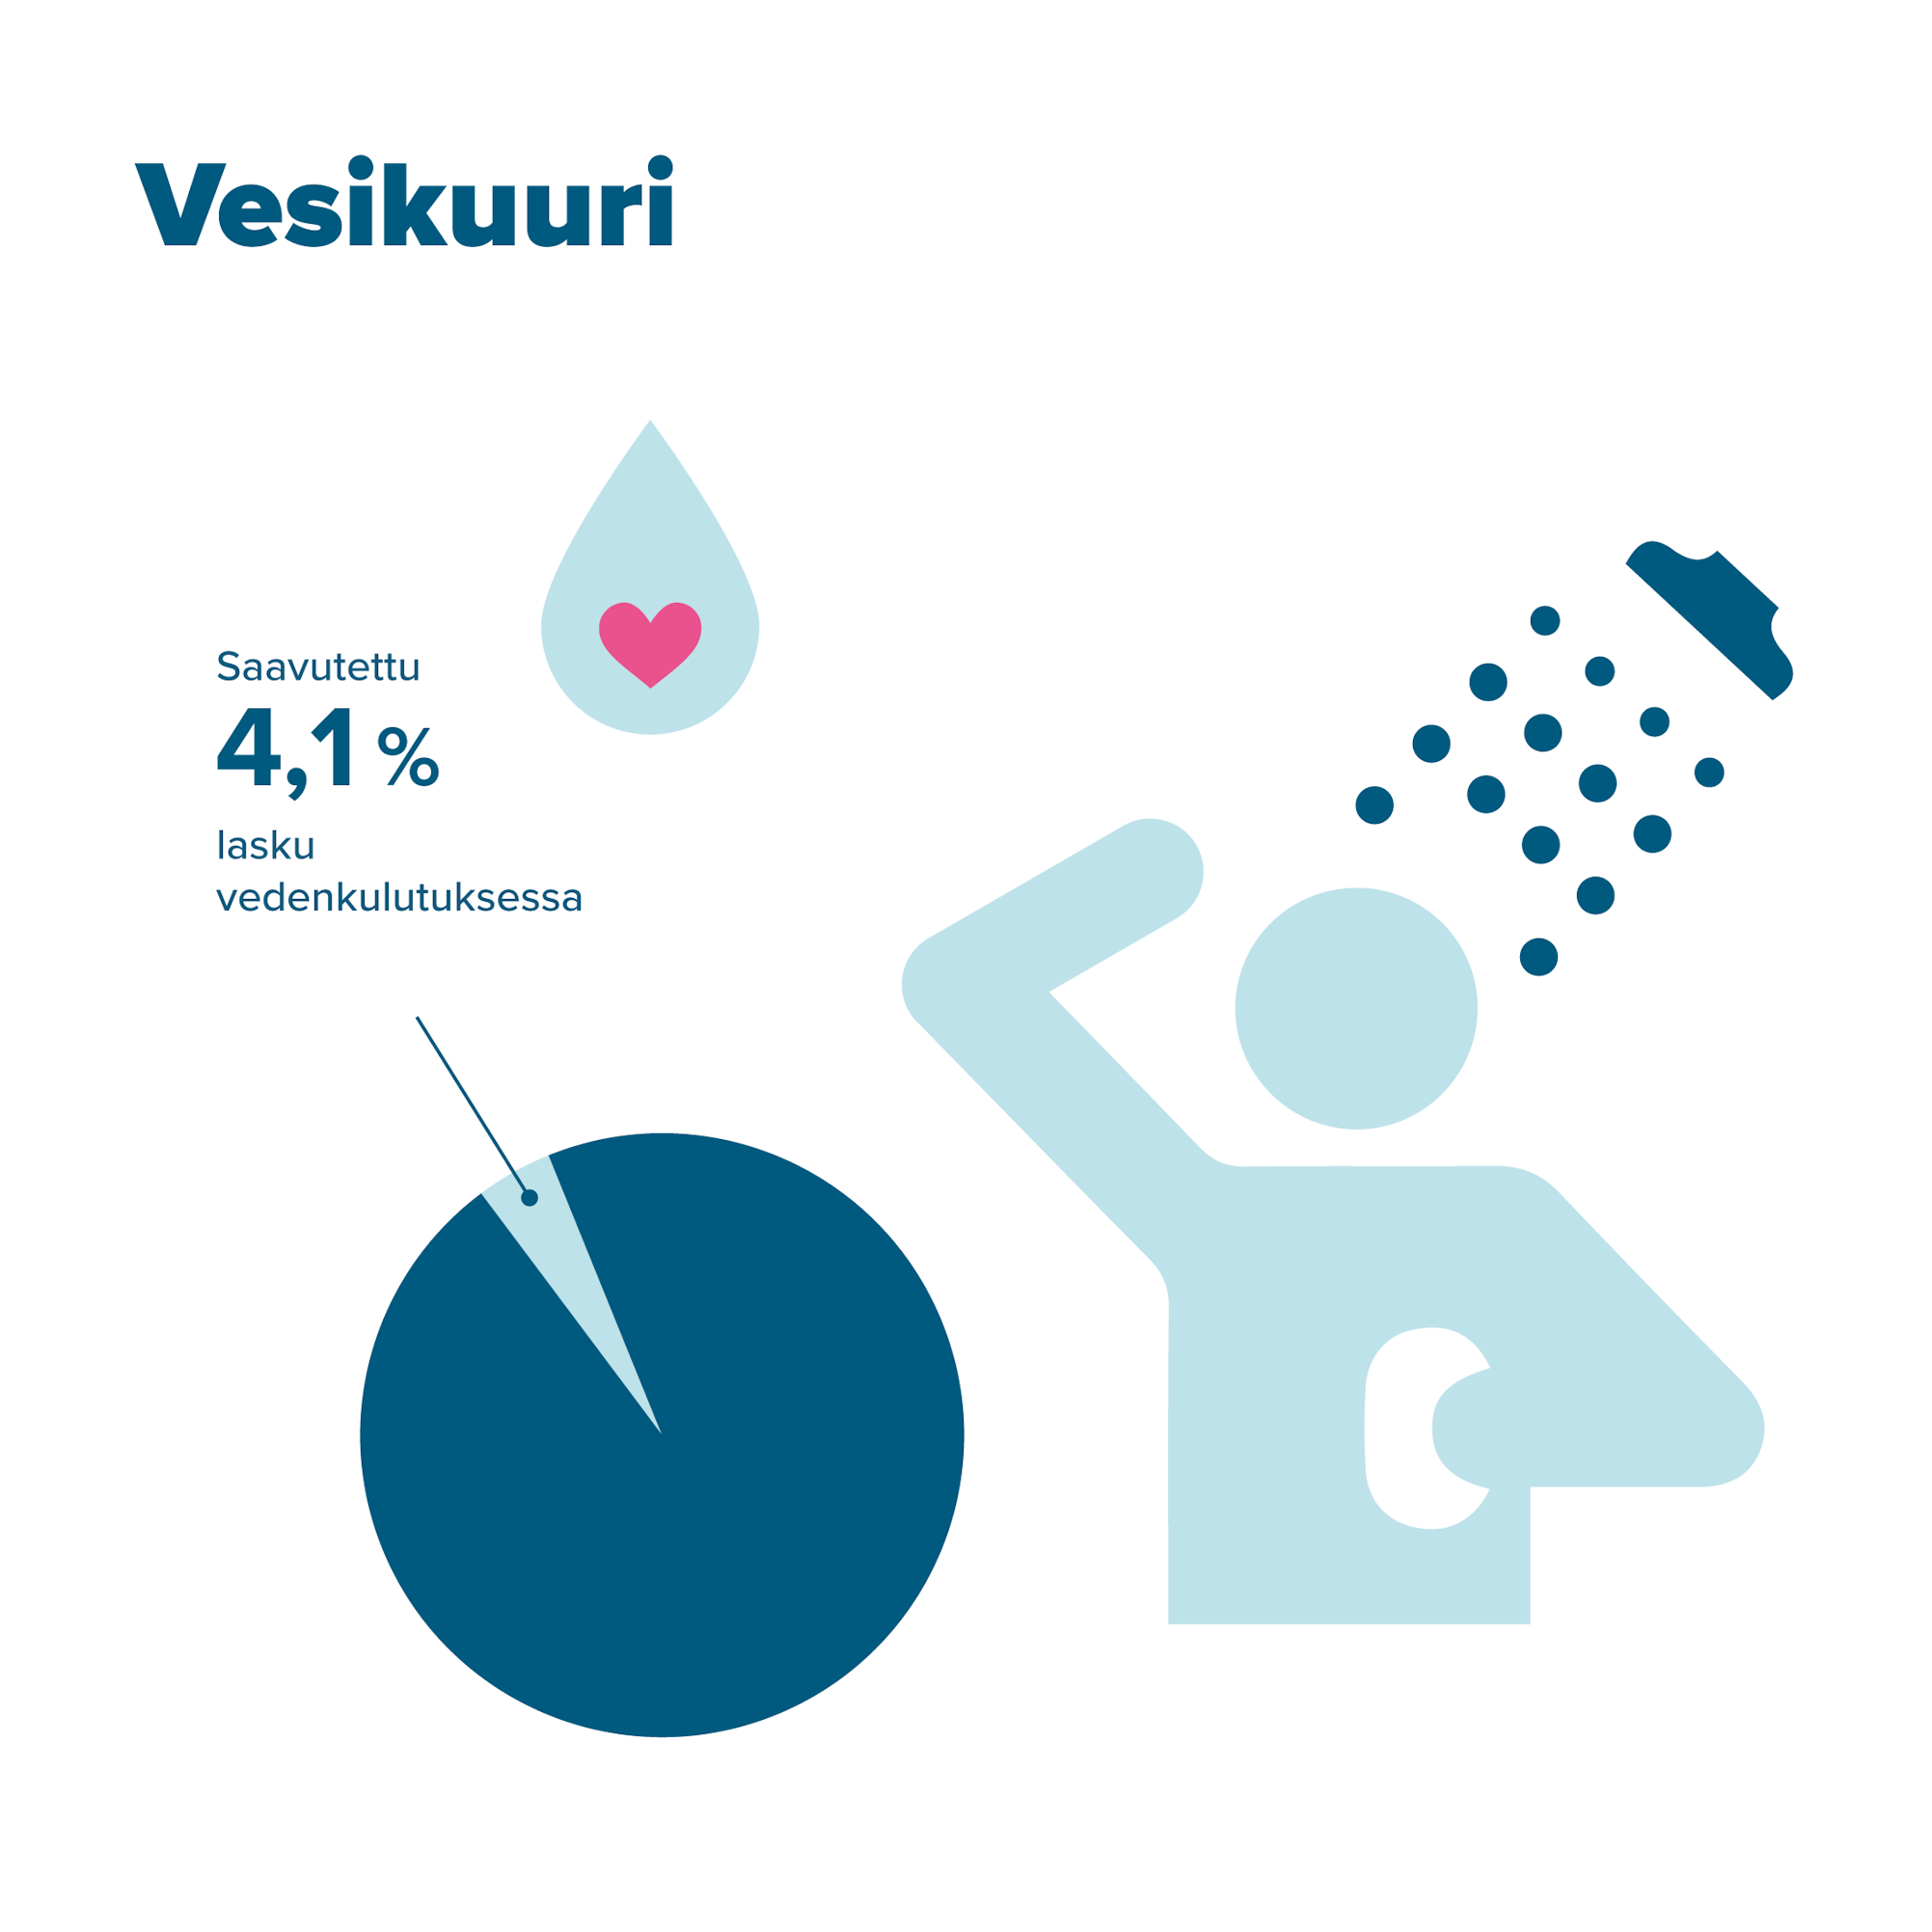 Vesikuuri: saavutettu 4,1 % lasku vedenkulutuksessa.